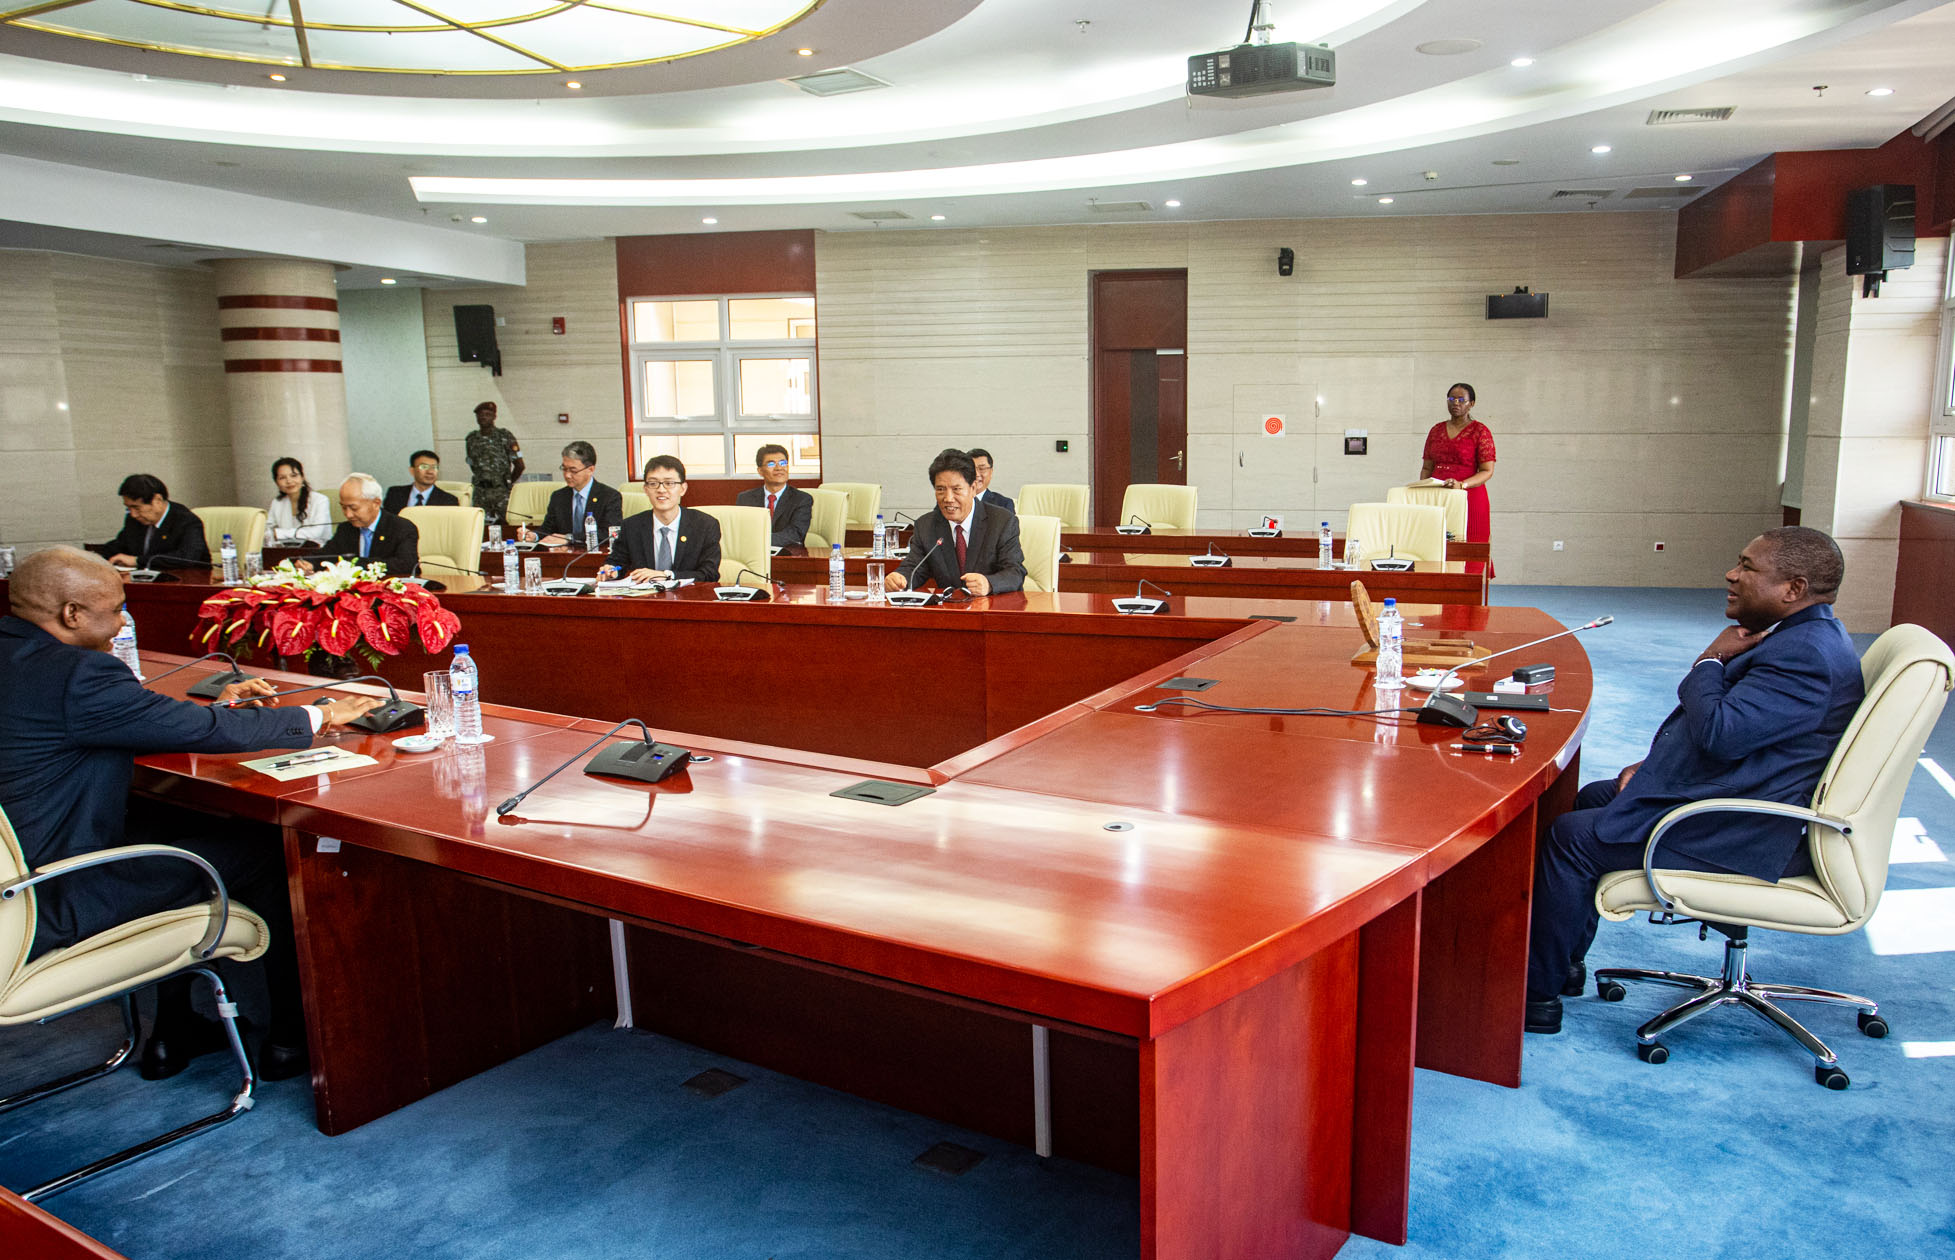 Para fortificar a cooperação – Presidente moçambicano recebe parlamentares chineses